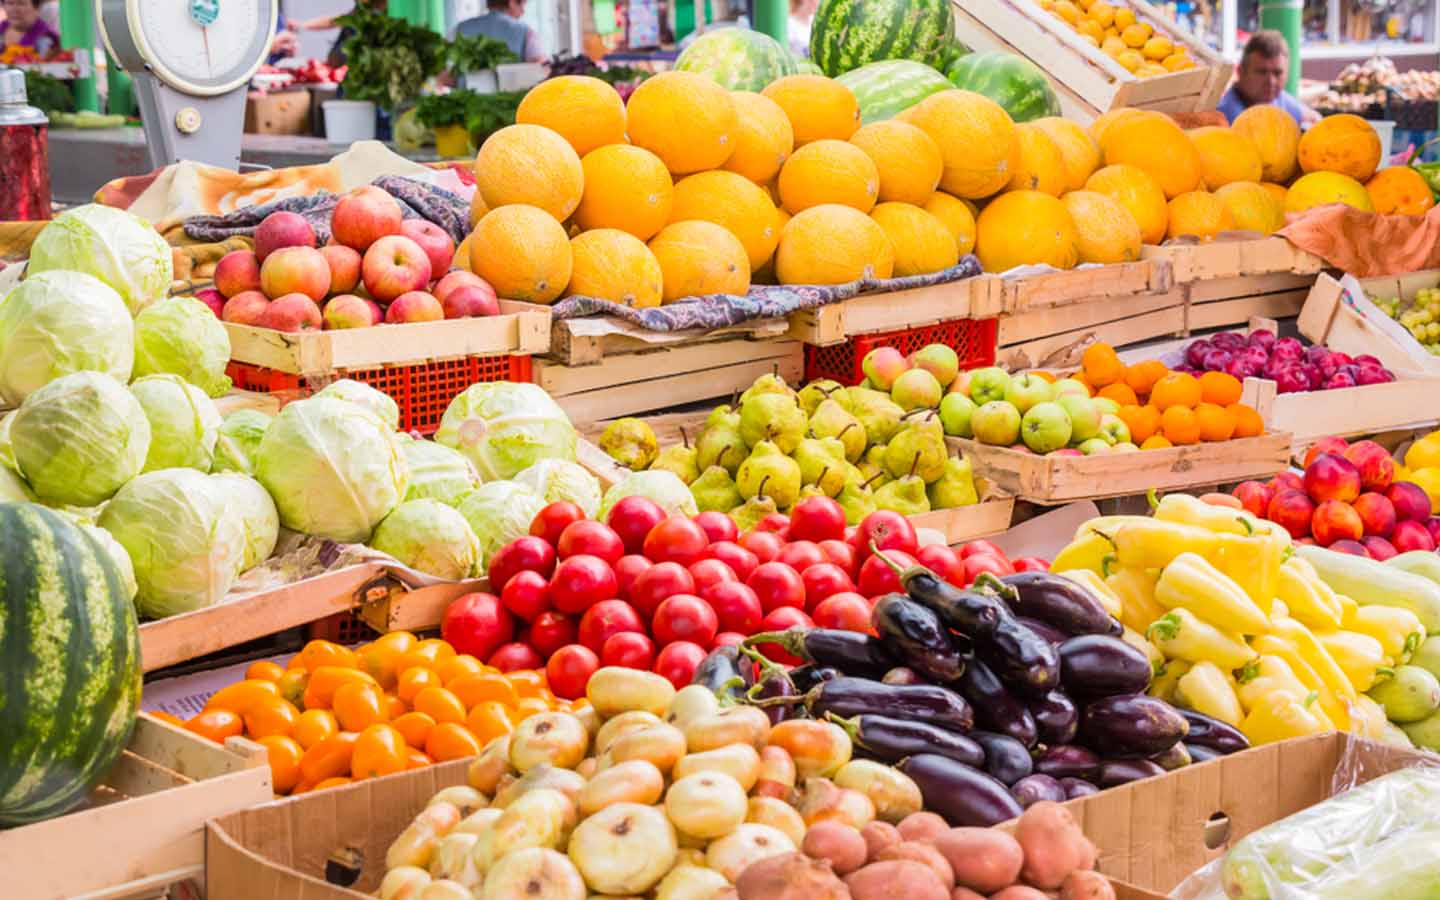 Đảm bảo lượng trái cây nhập khẩu phải có chất lượng cao, hạn chế tối đa việc tồn kho